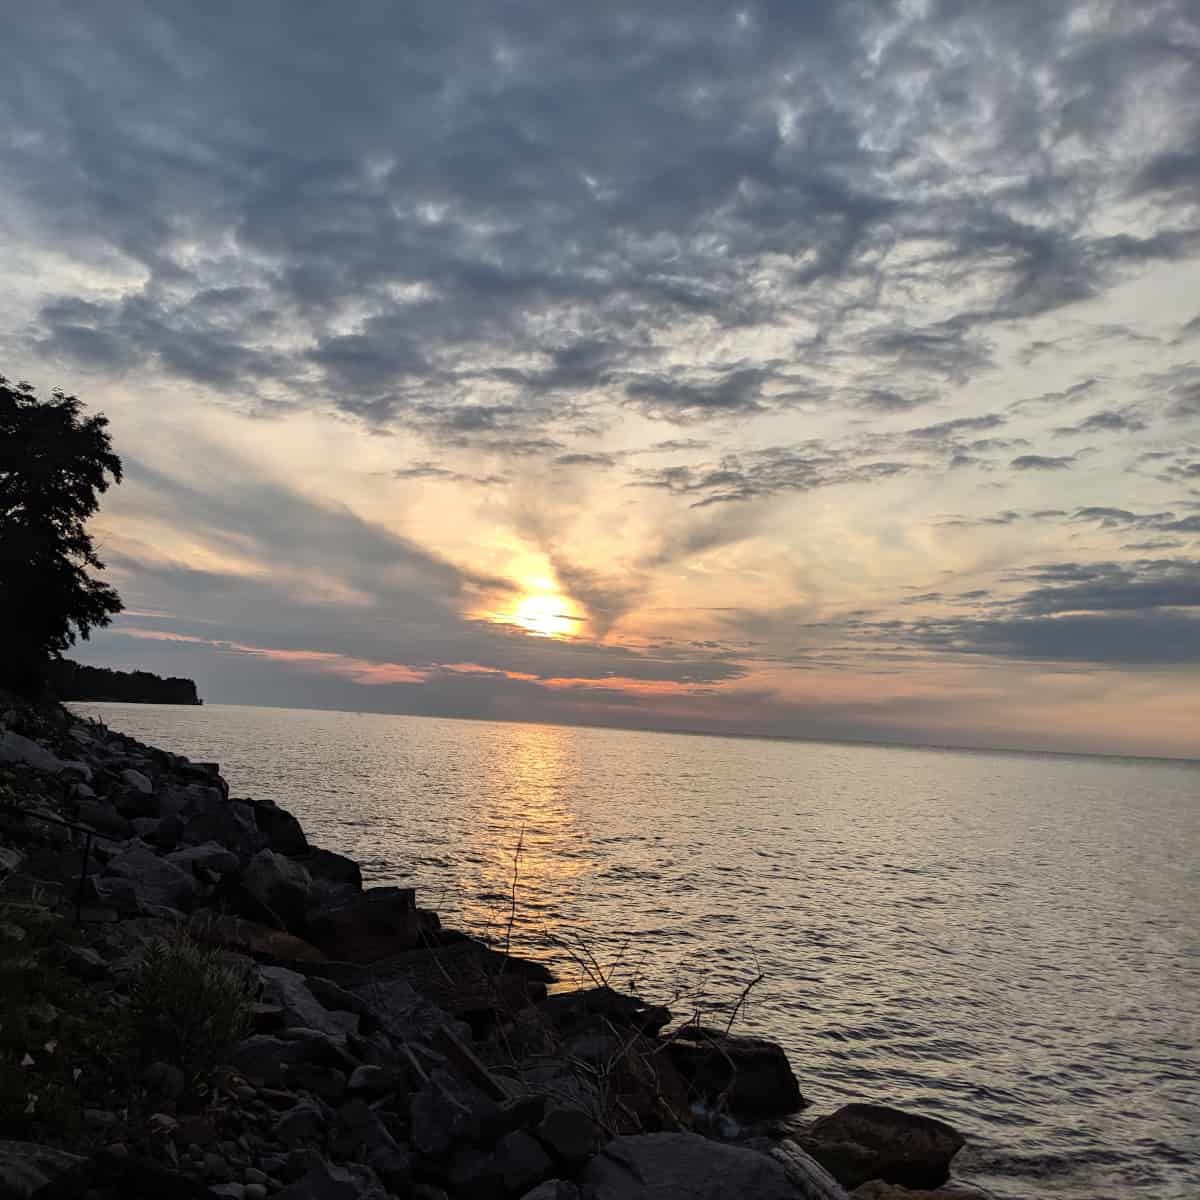 Lake Ontario at Sunset